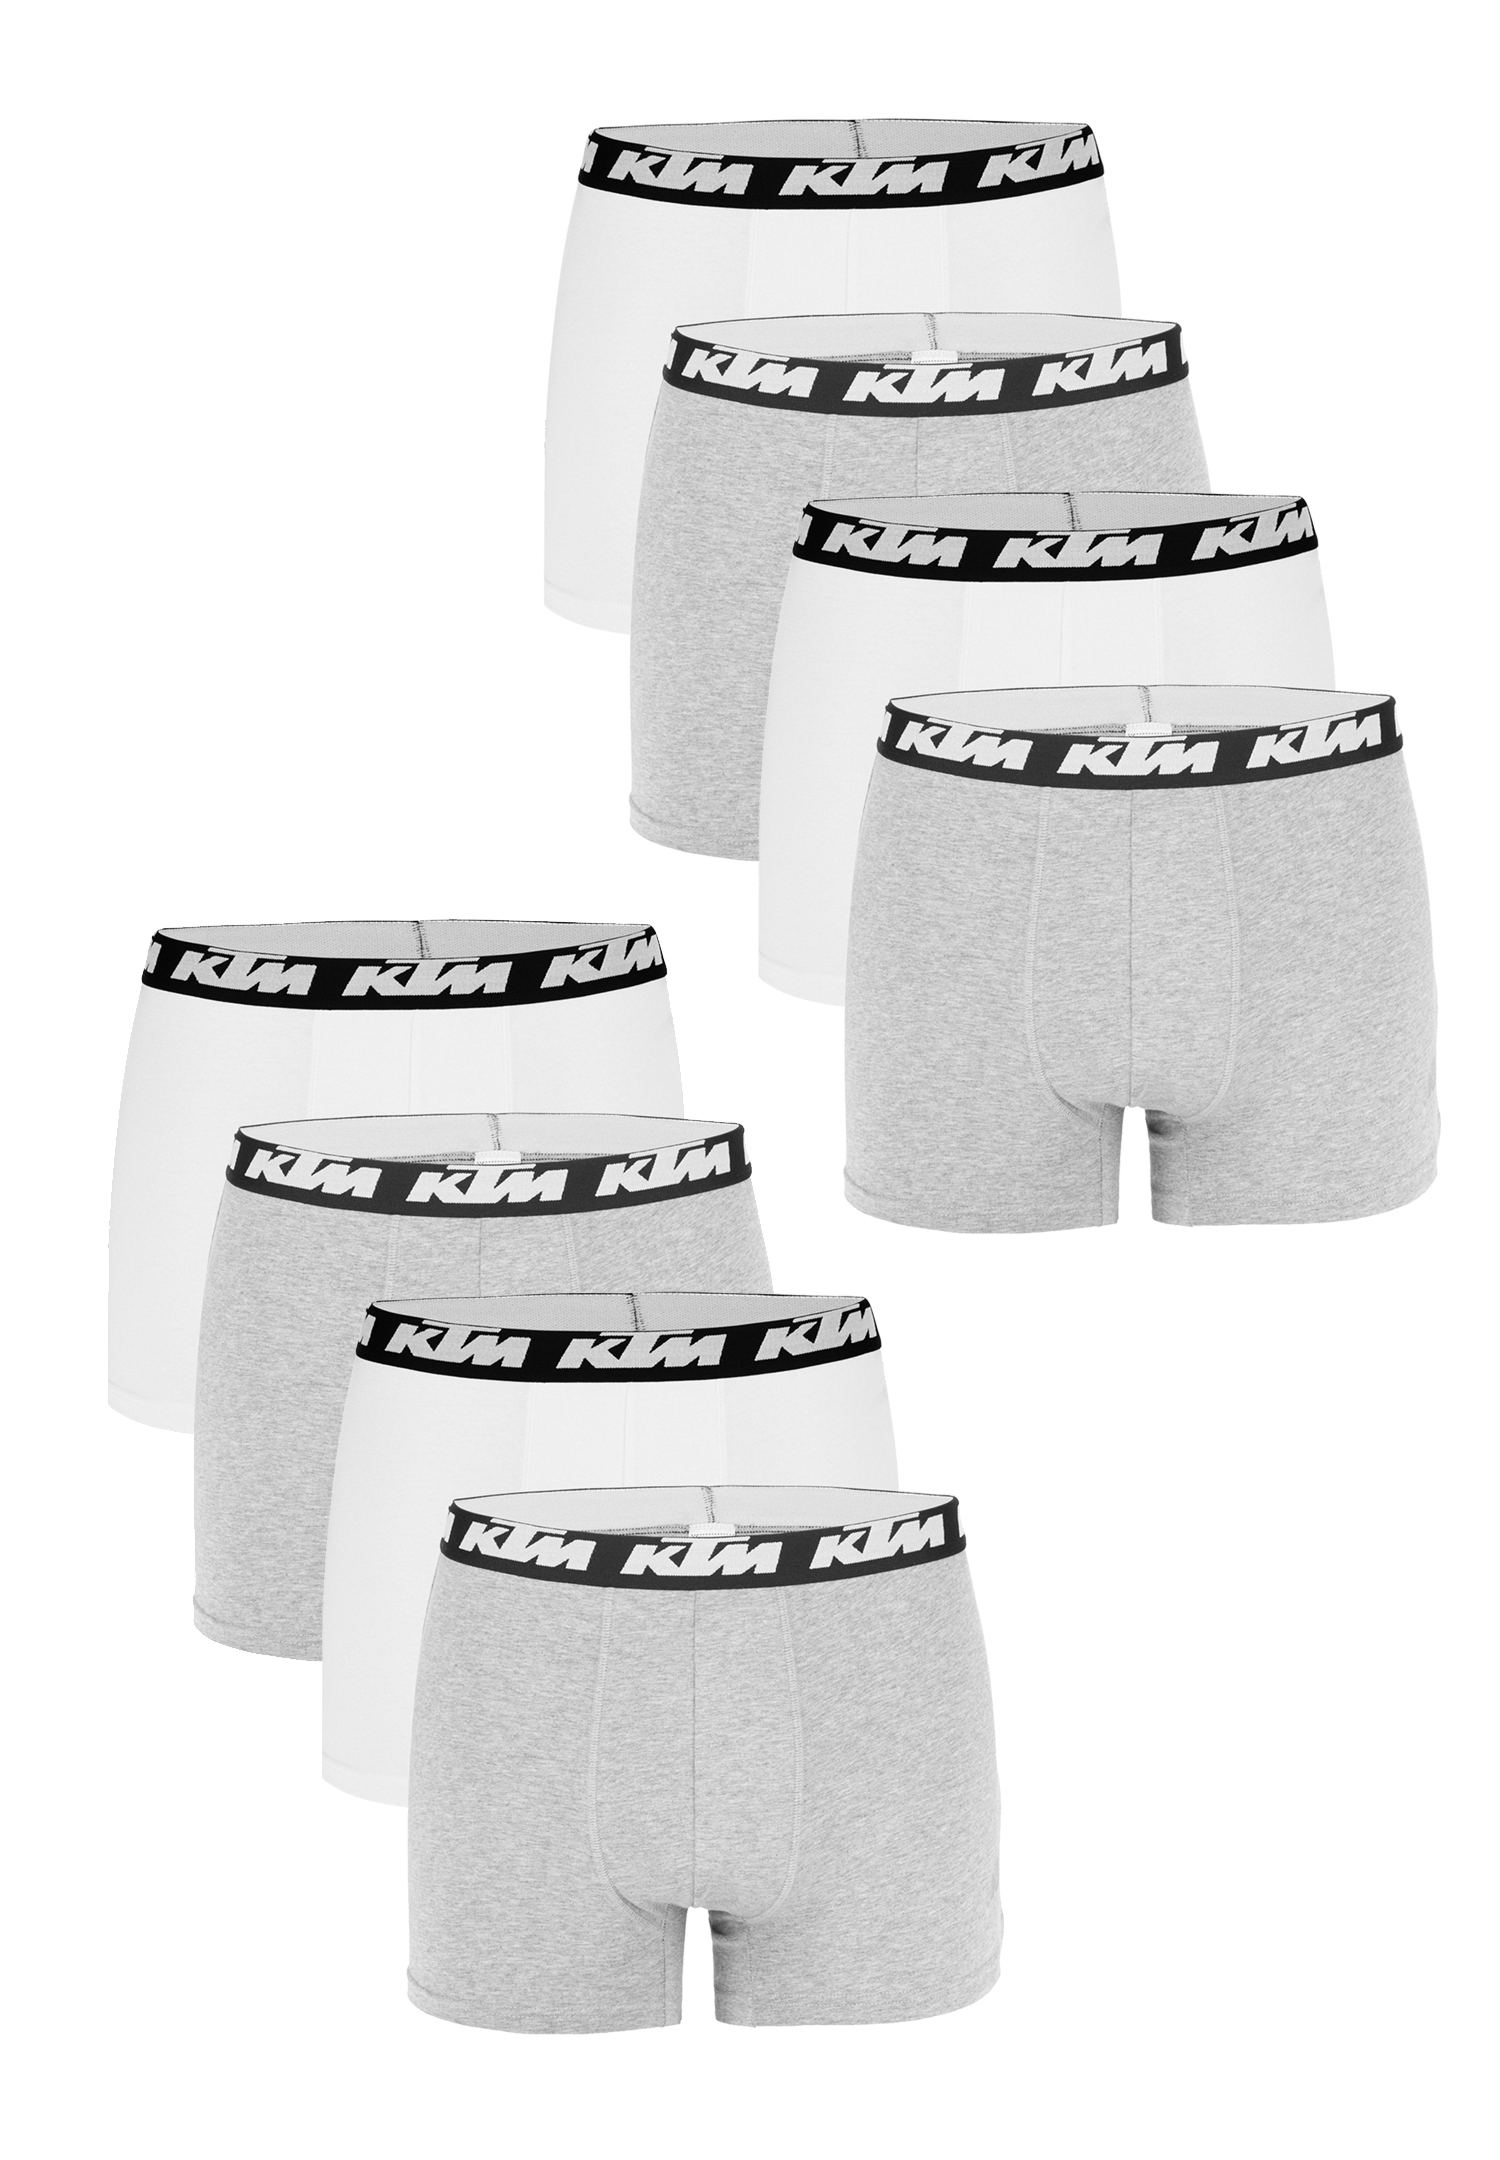 Боксеры KTM Boxershorts 8 шт, цвет Light Grey / White боксеры ktm boxershorts 5 шт цвет black dark grey light grey